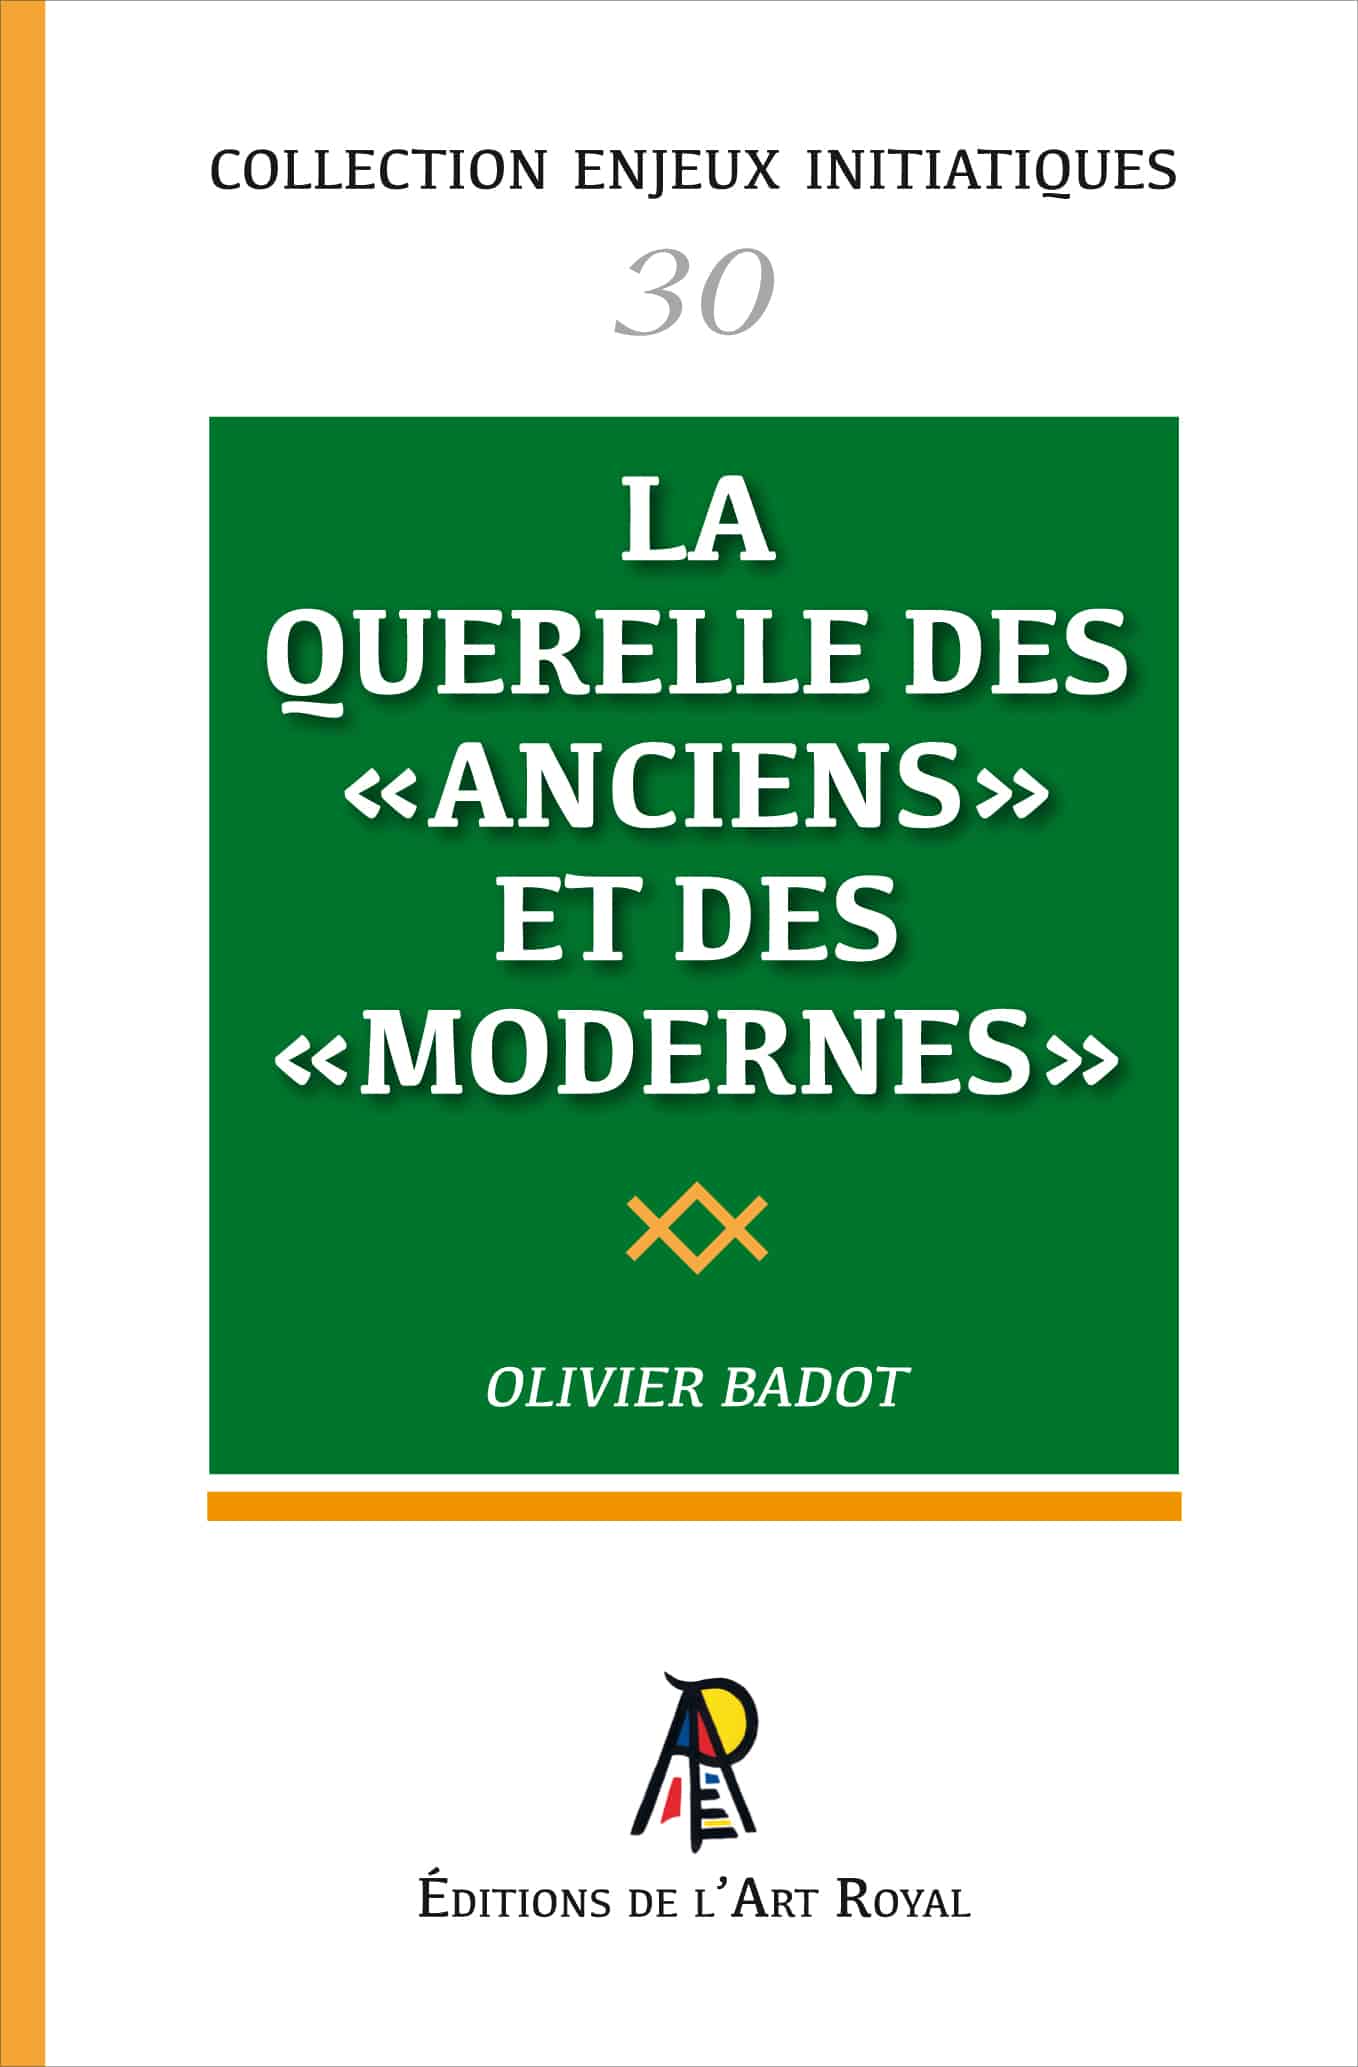 La Querelle des Anciens et des Modernes, Olivier Badot